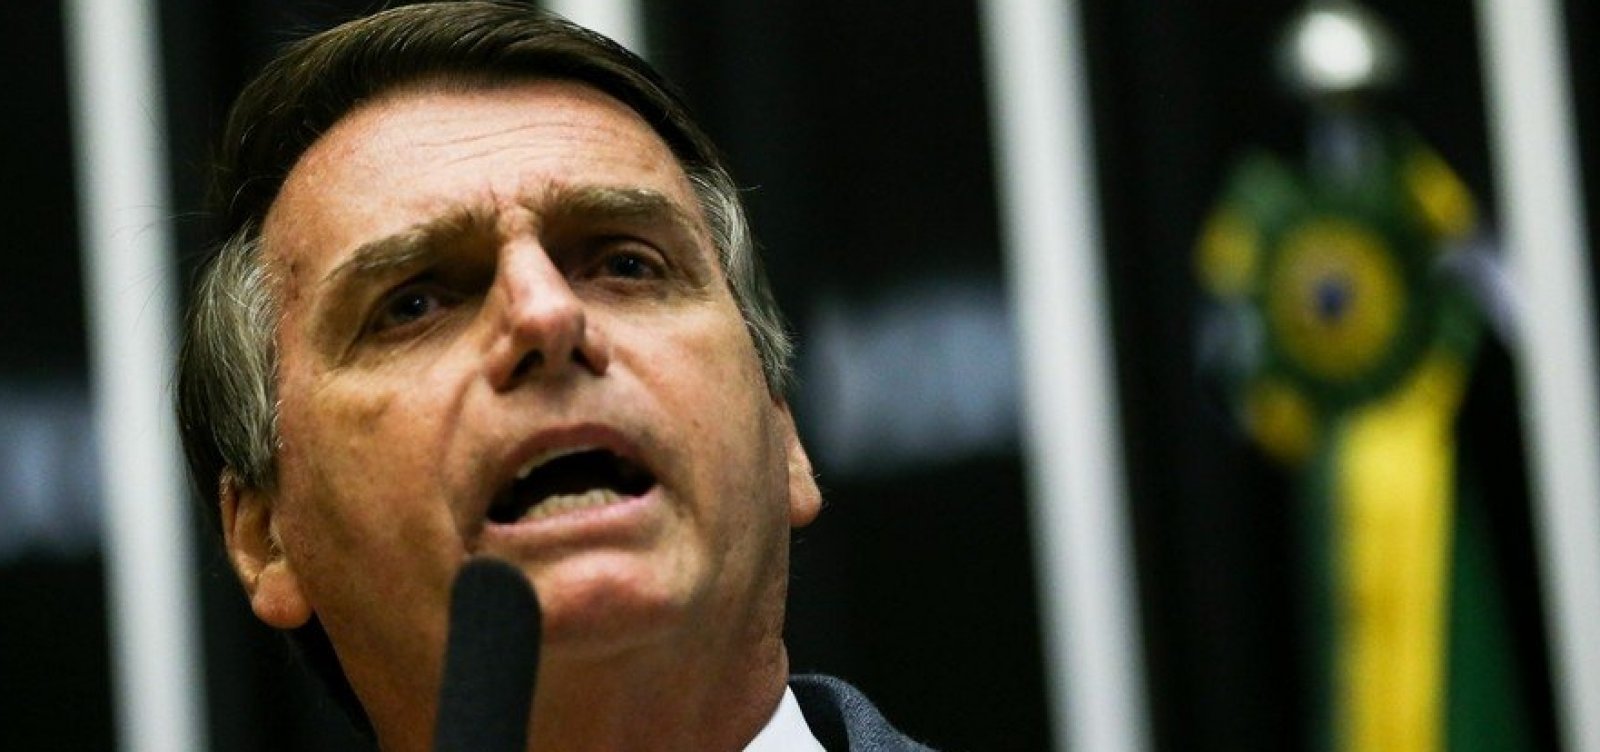 Com medo de atentado, Bolsonaro chega a usar colete à prova de balas